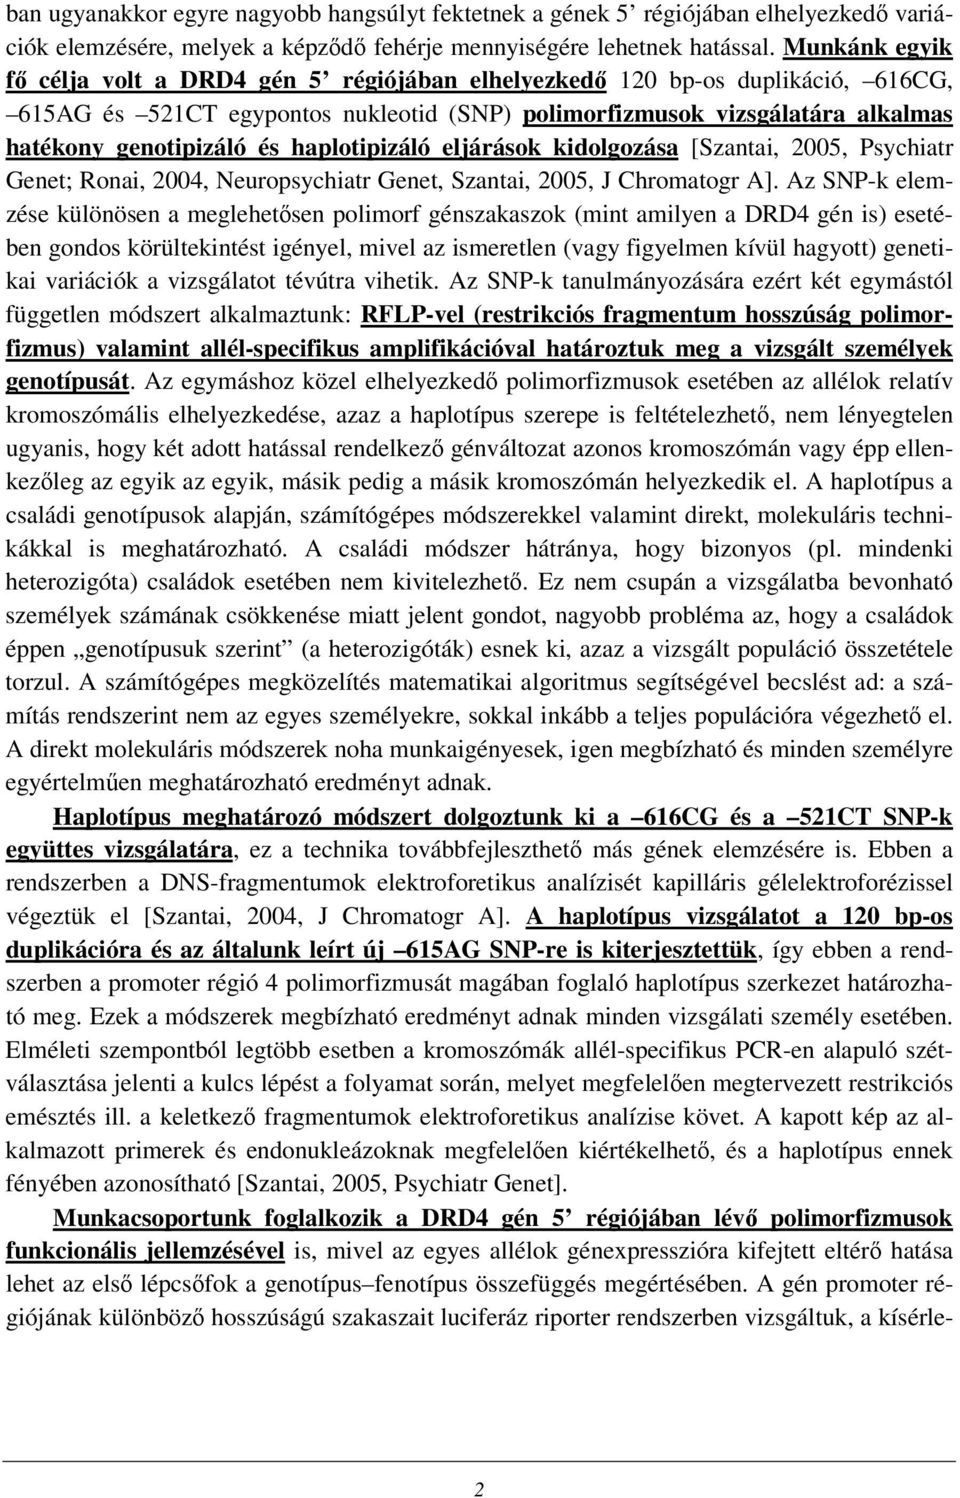 haplotipizáló eljárások kidolgozása [Szantai, 2005, Psychiatr Genet; Ronai, 2004, Neuropsychiatr Genet, Szantai, 2005, J Chromatogr A].